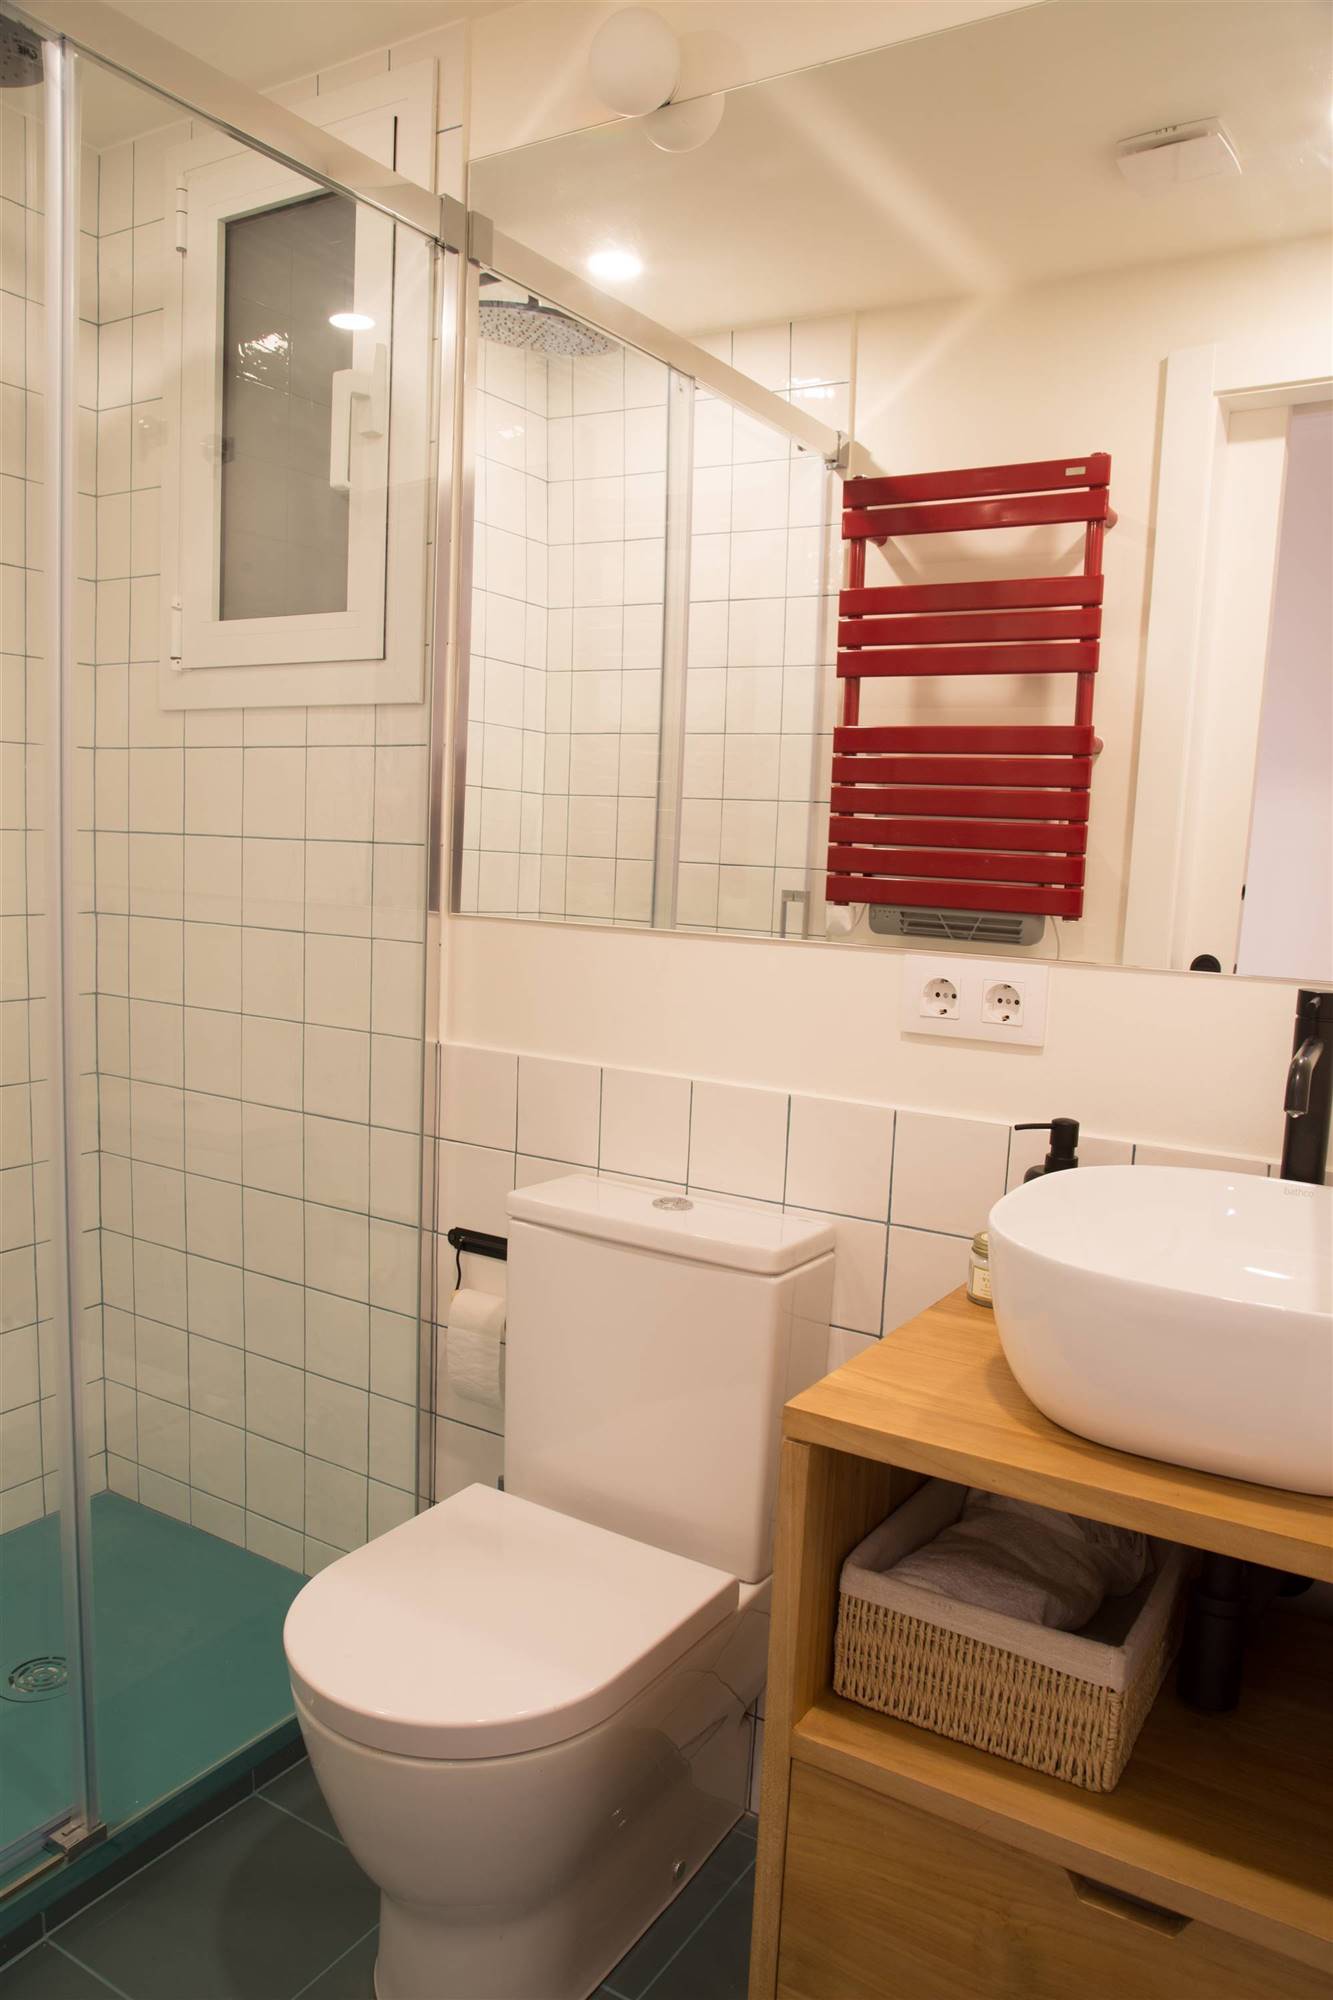 Un baño pequeño con toques de color y una pequeña cabina de ducha.